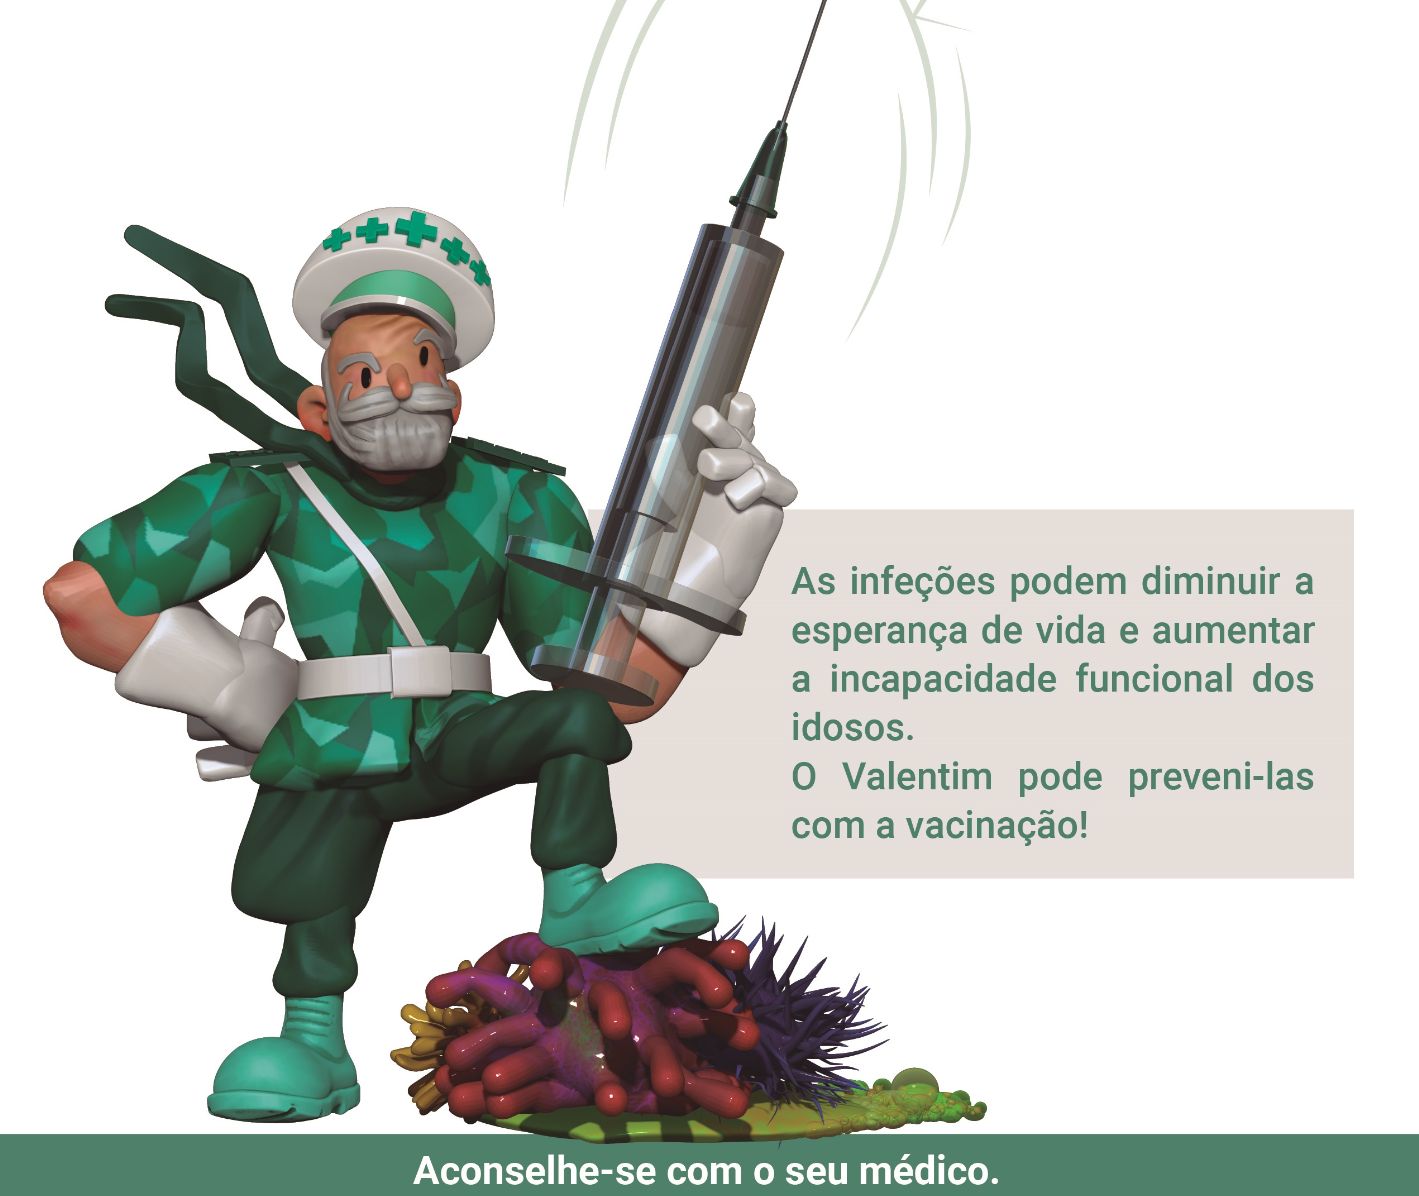 Núcleo de Estudos de Geriatria da Sociedade Portuguesa de Medicina Interna lança campanha “Vacinação é protecção”  dirigida a idosos